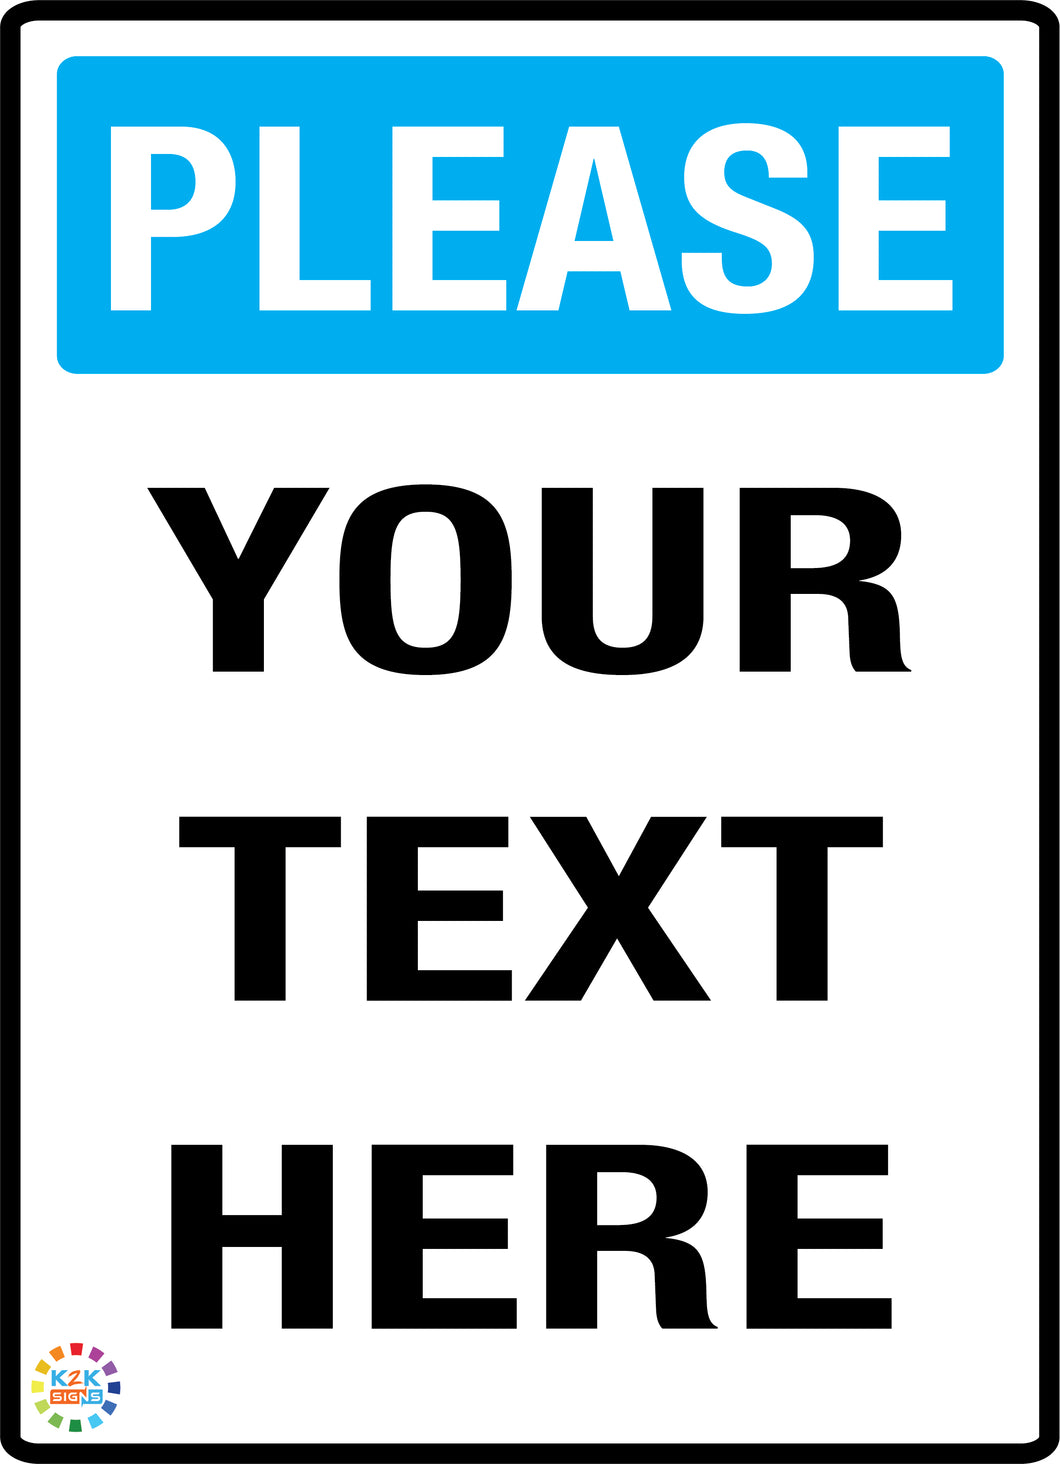 Please<br/> Custom Text Sign